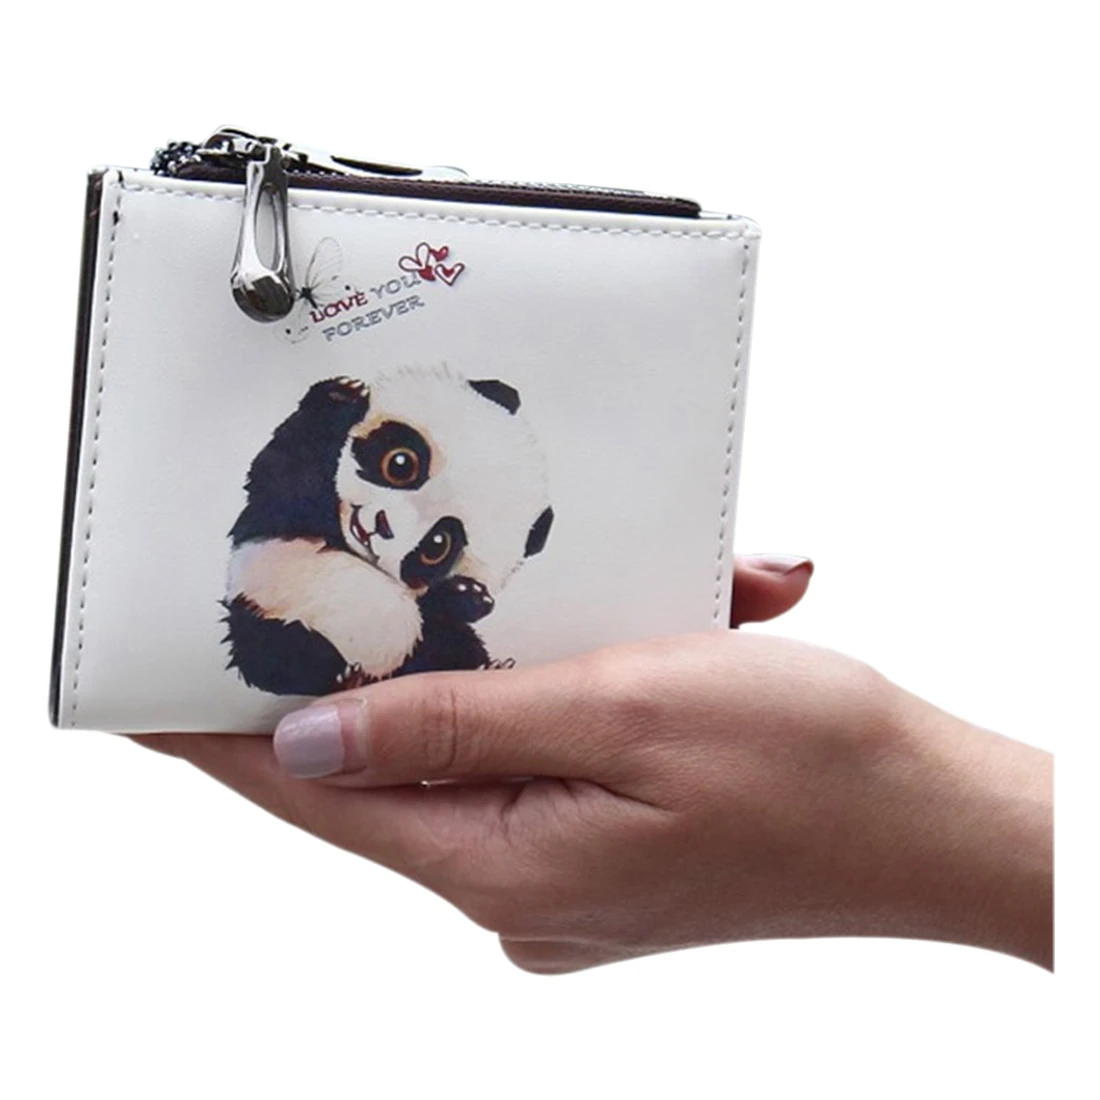 Fggs модная короткая женская сумочка с рисунком из мультфильма, кошелек на молнии, женский кошелек, держатель для карт(панда